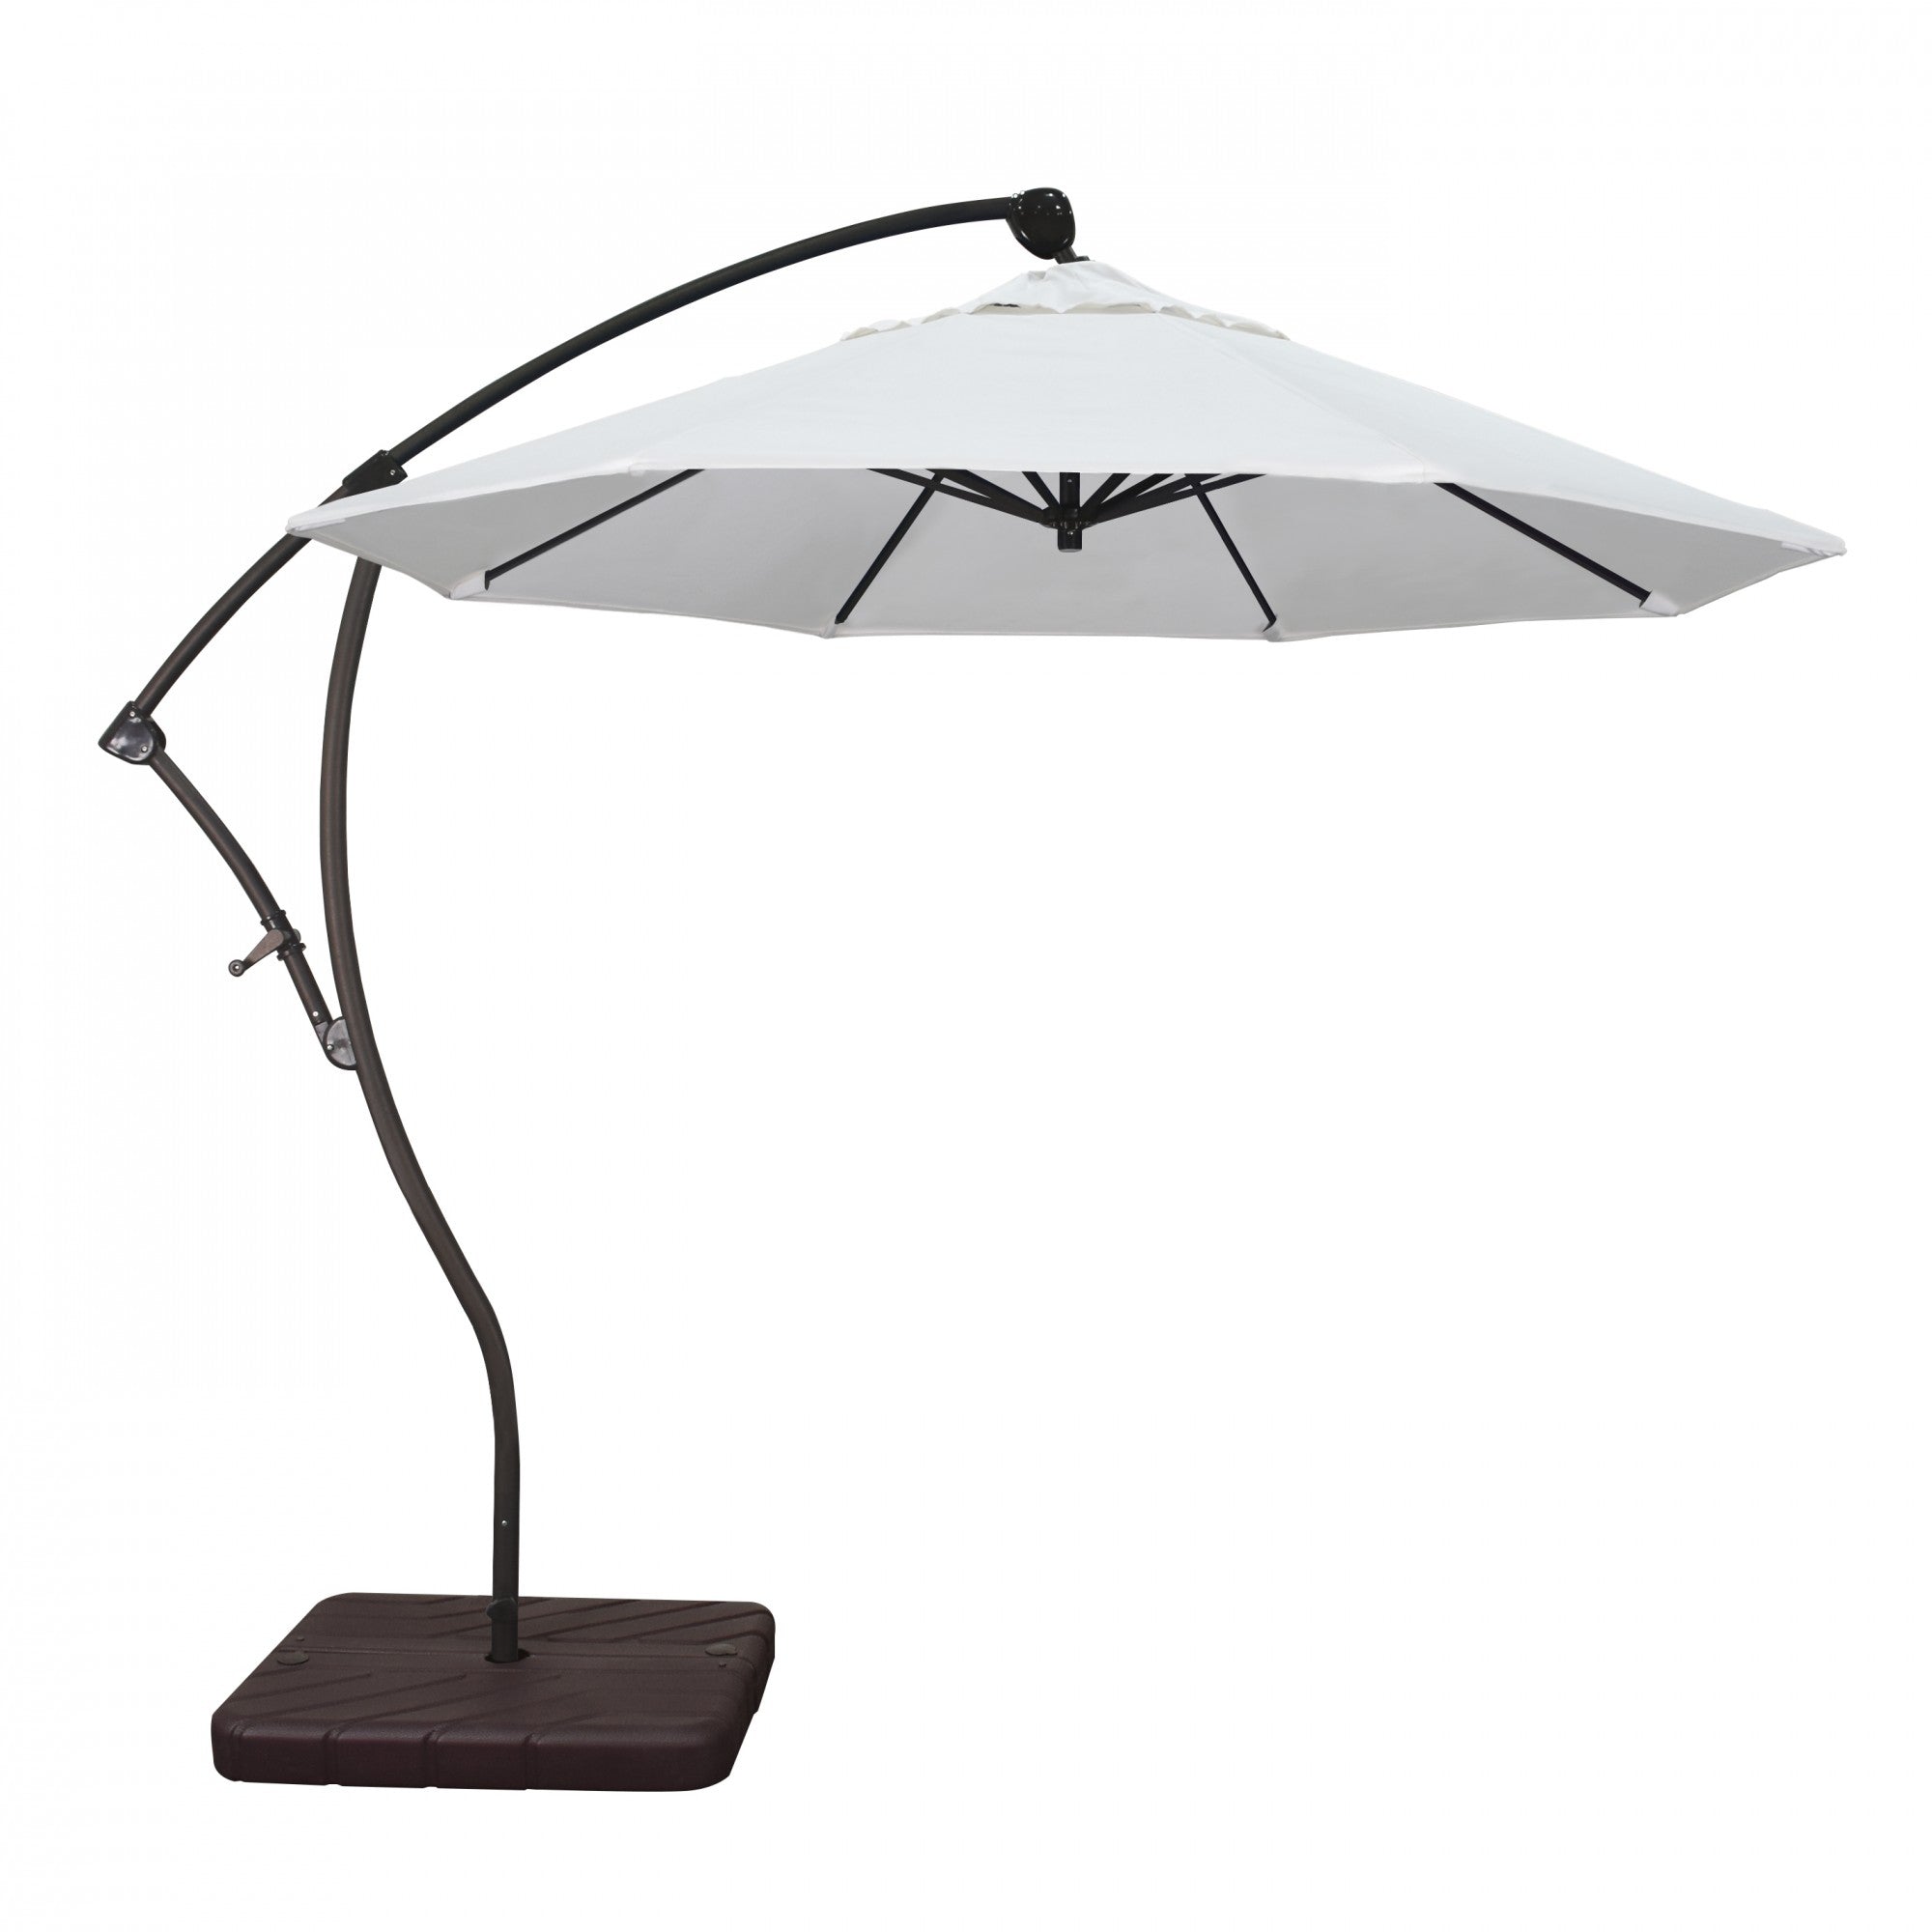 California Umbrella - 9' - Cantilever Umbrella - Aluminum Pole - Natural - Sunbrella  - BA908117-5404